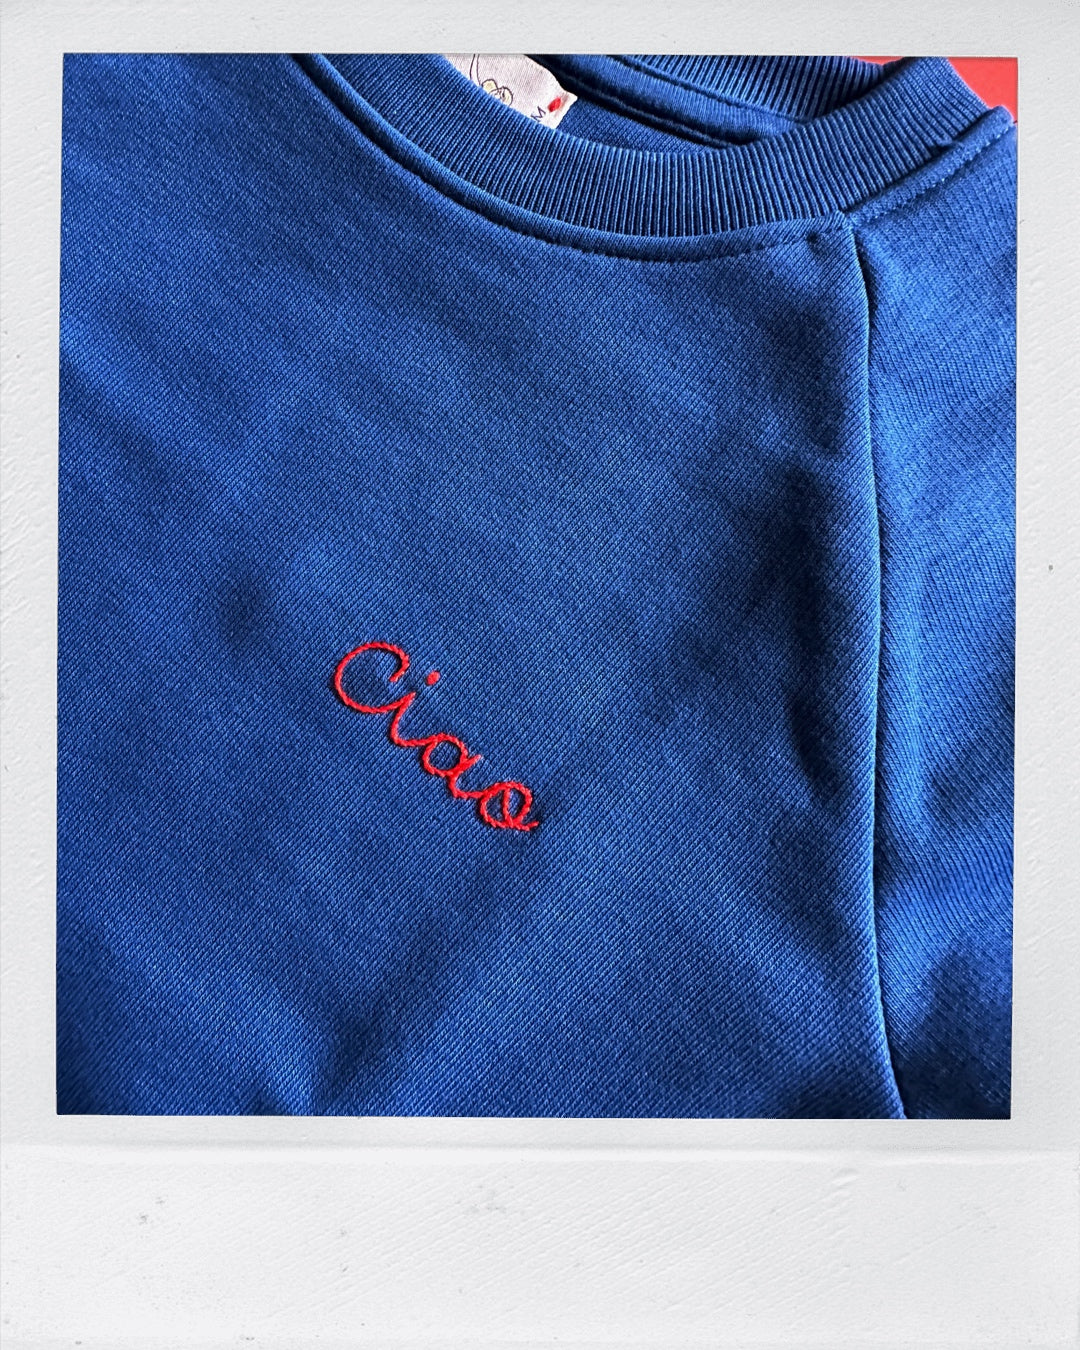 CIAO- a KID sweatshirt